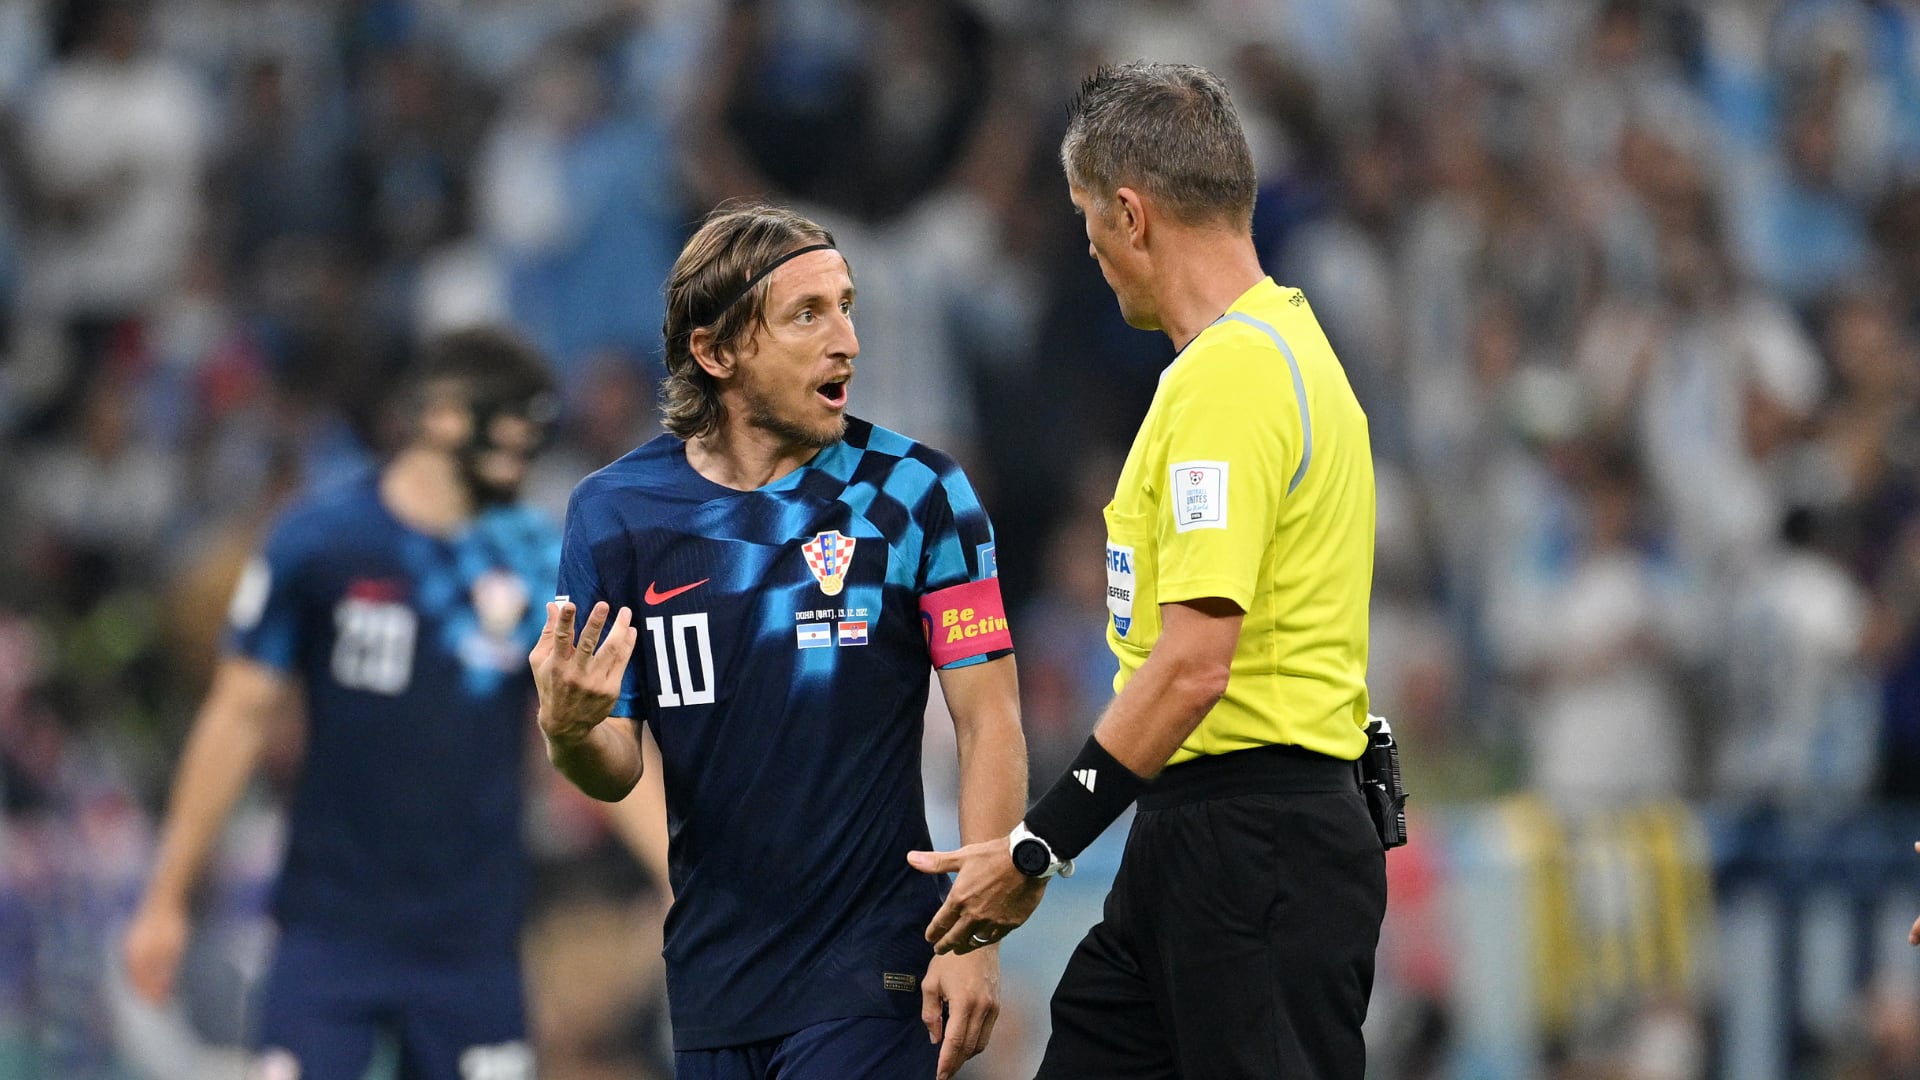 fuerte crítica de Luka Modric al árbitro del partido Argentina vs. Croacia